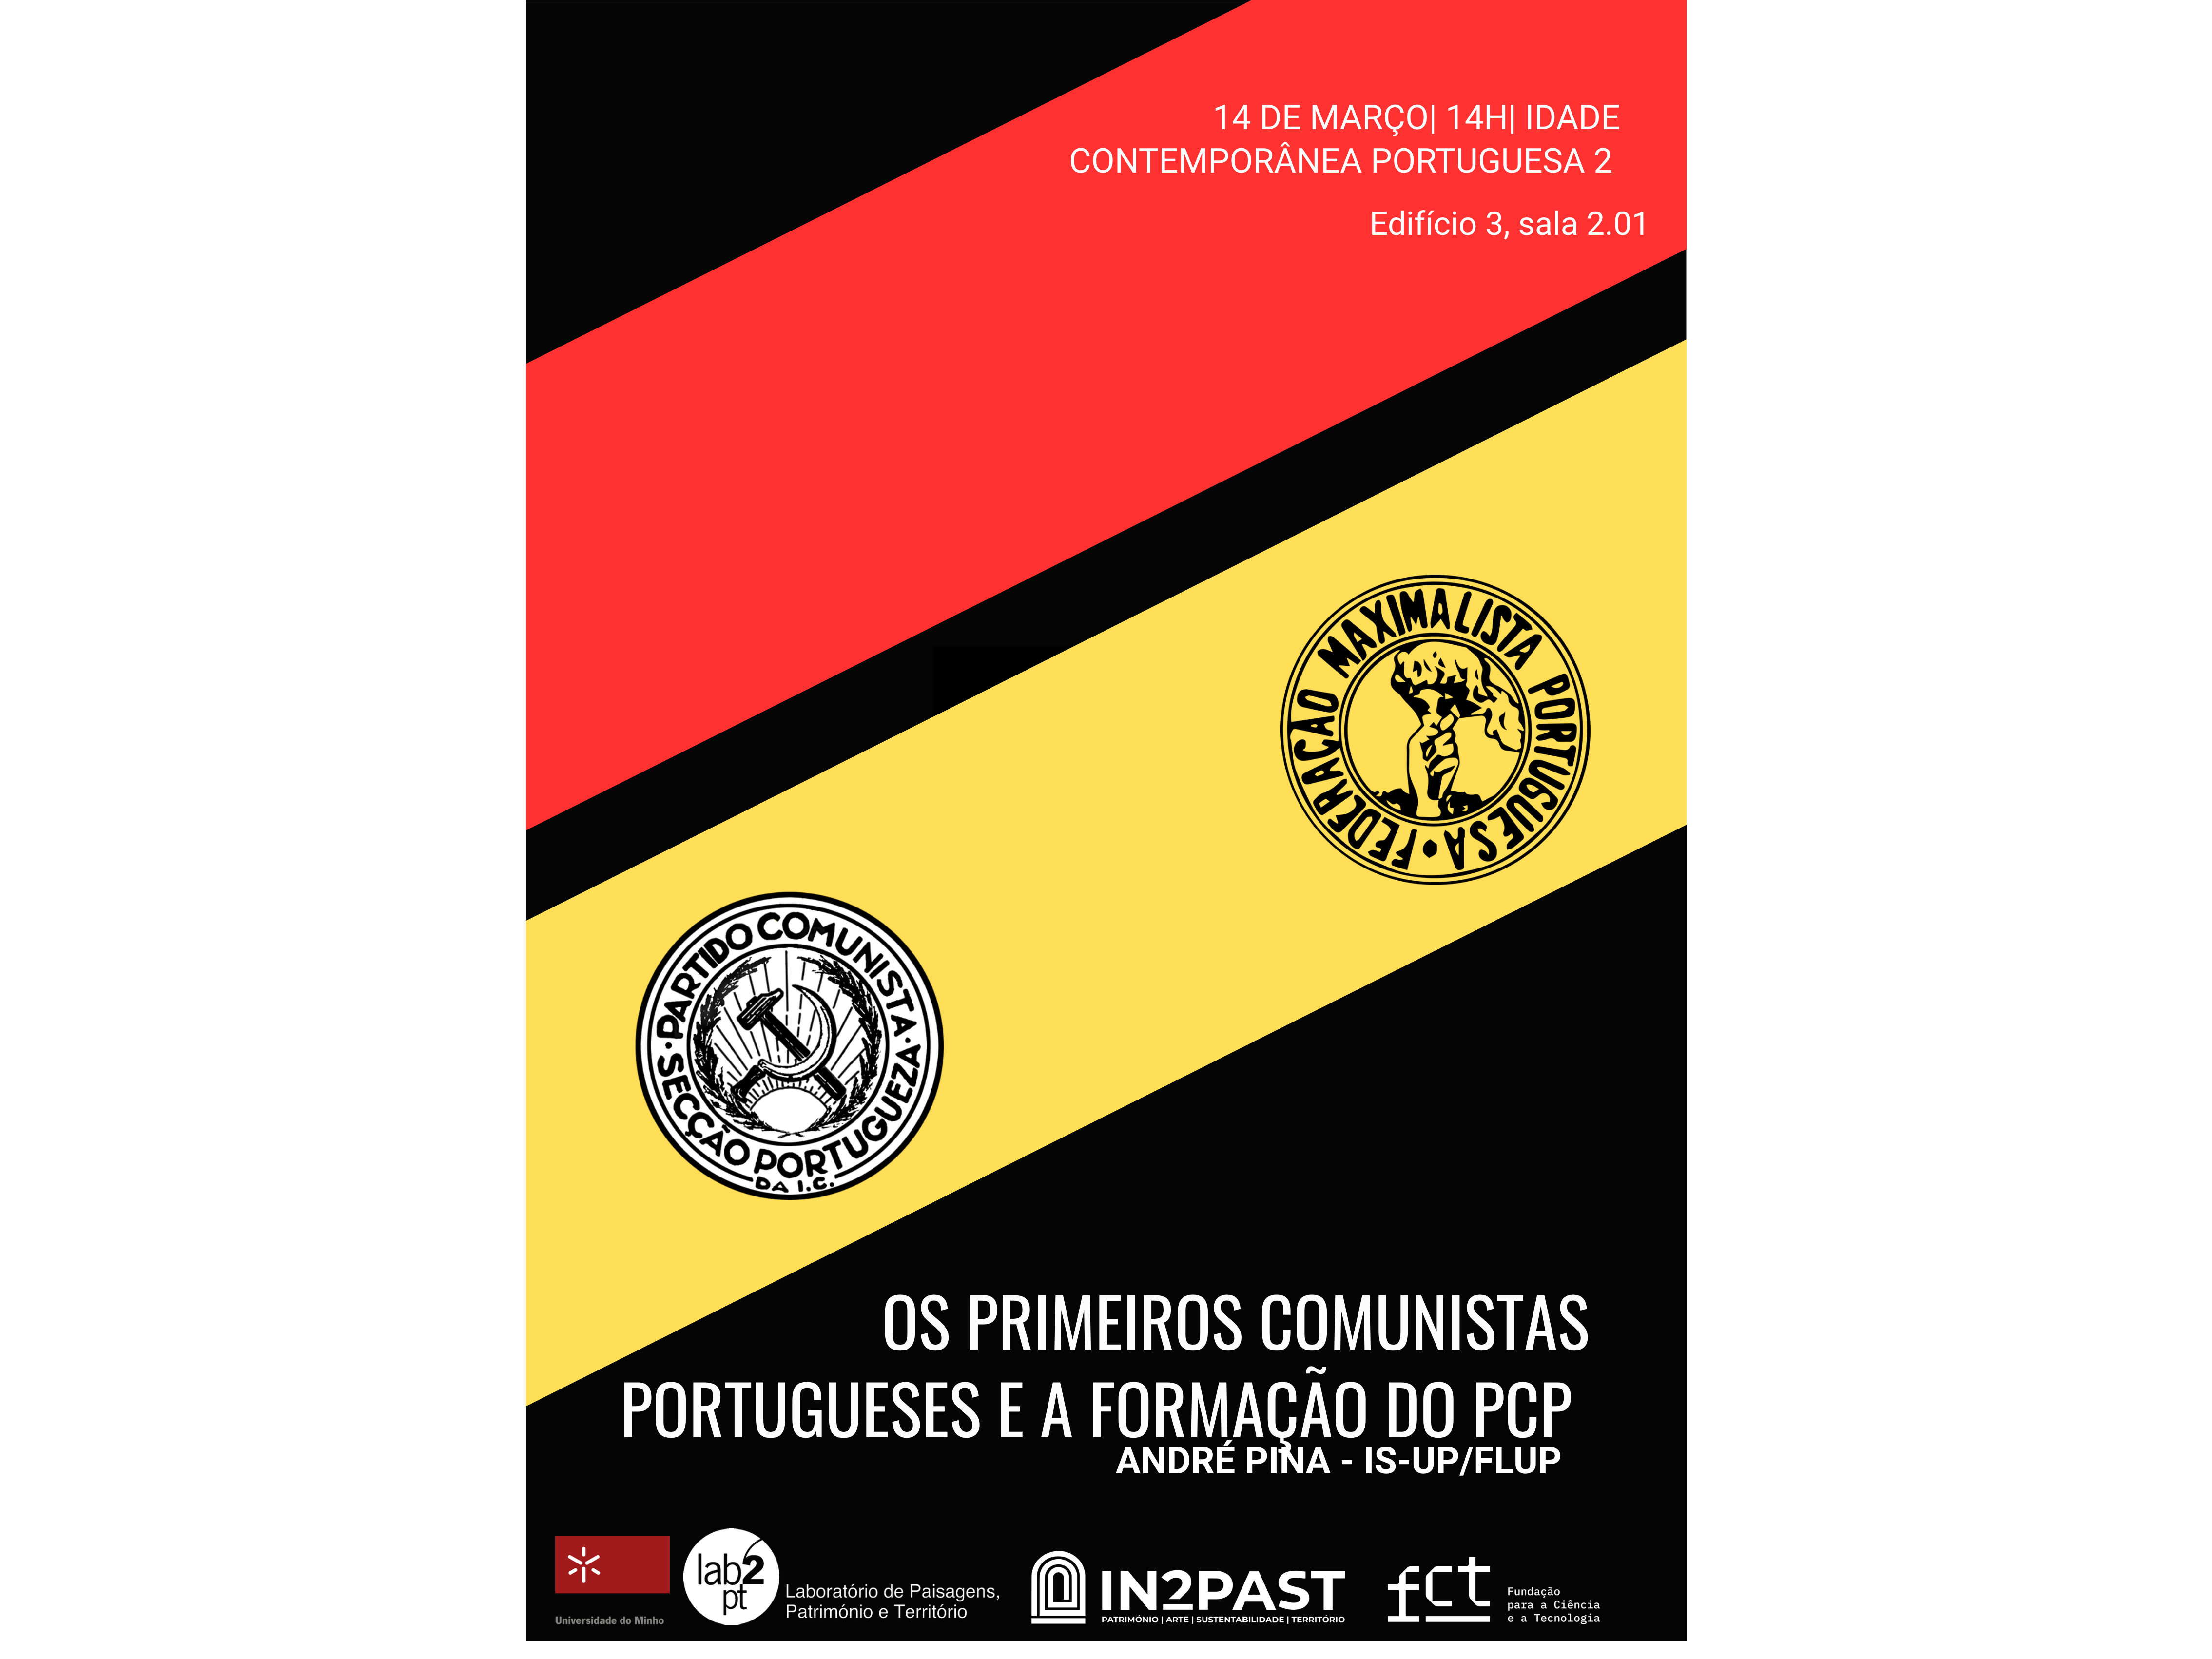 Os primeiros comunistas portugueses e a formação do PCP image